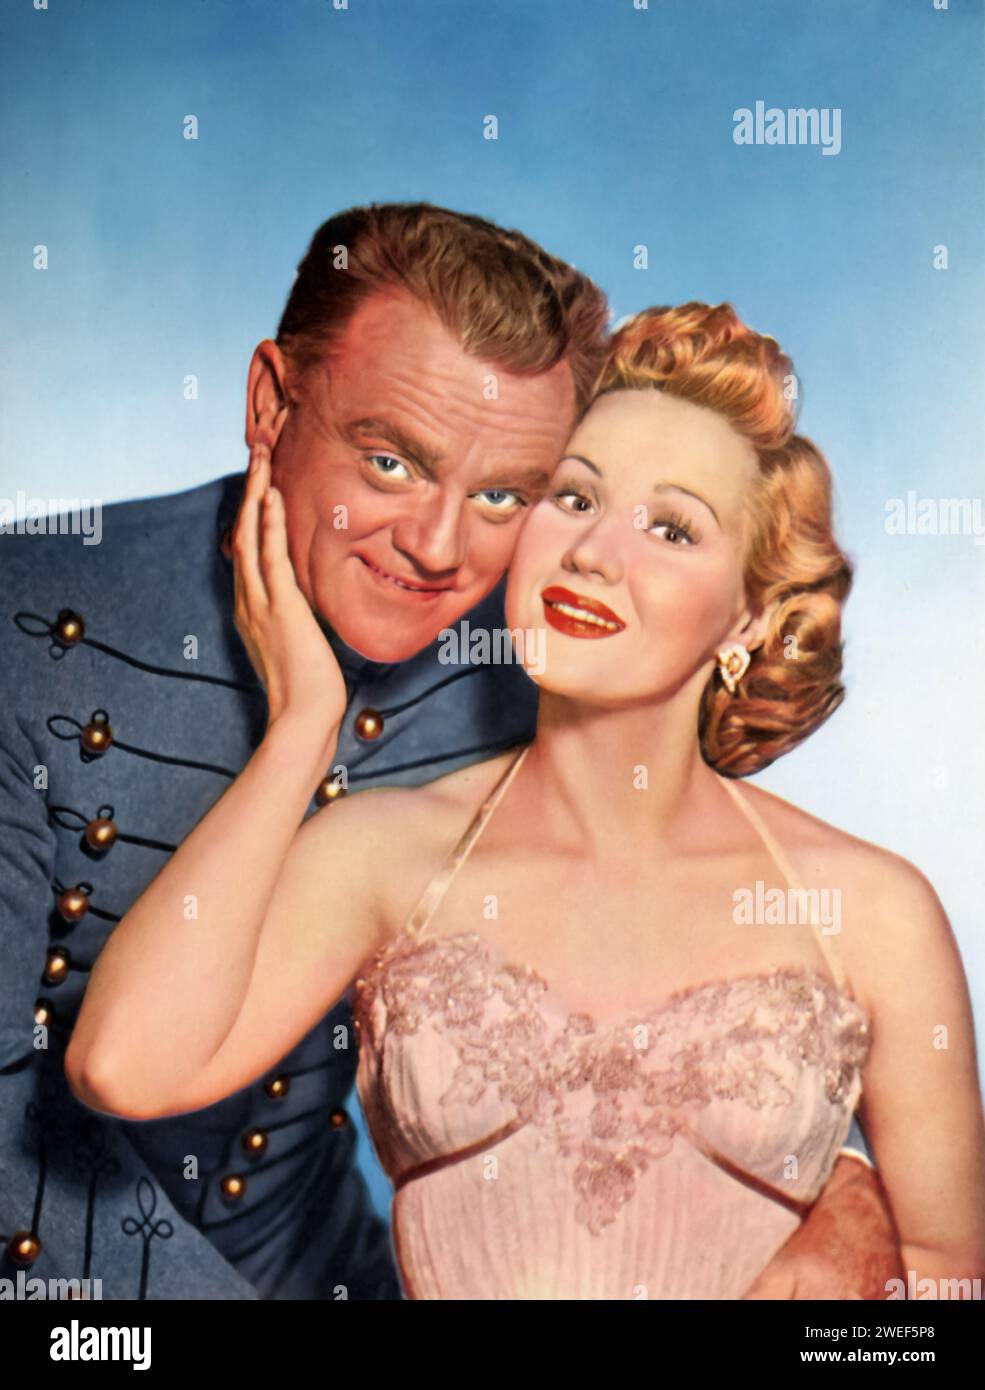 James Cagney e Virginia Mayo sono i protagonisti di "The West Point Story" (1950), noto anche come "fine and Dandy". In questa commedia musicale, Cagney interpreta Elwin 'Bix' Bixby, un regista di Broadway che ha il compito di dirigere lo spettacolo annuale dei cadetti di West Point. Mayo interpreta Eve Dillon, la protagonista dello spettacolo e l'interesse amoroso di Bixby. Foto Stock